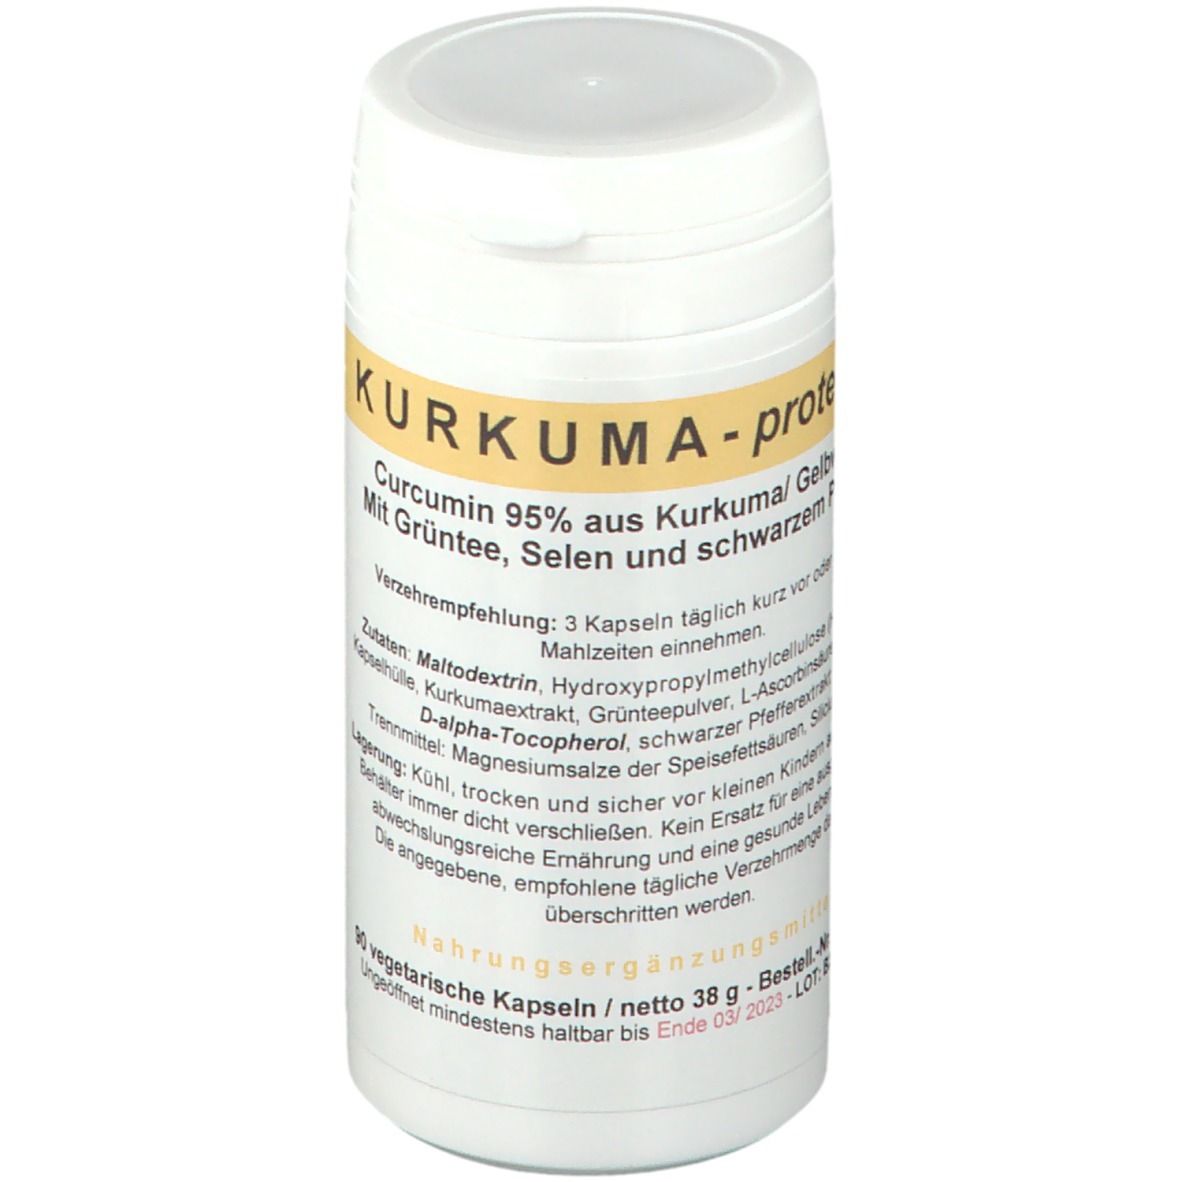 Kurkuma - protect